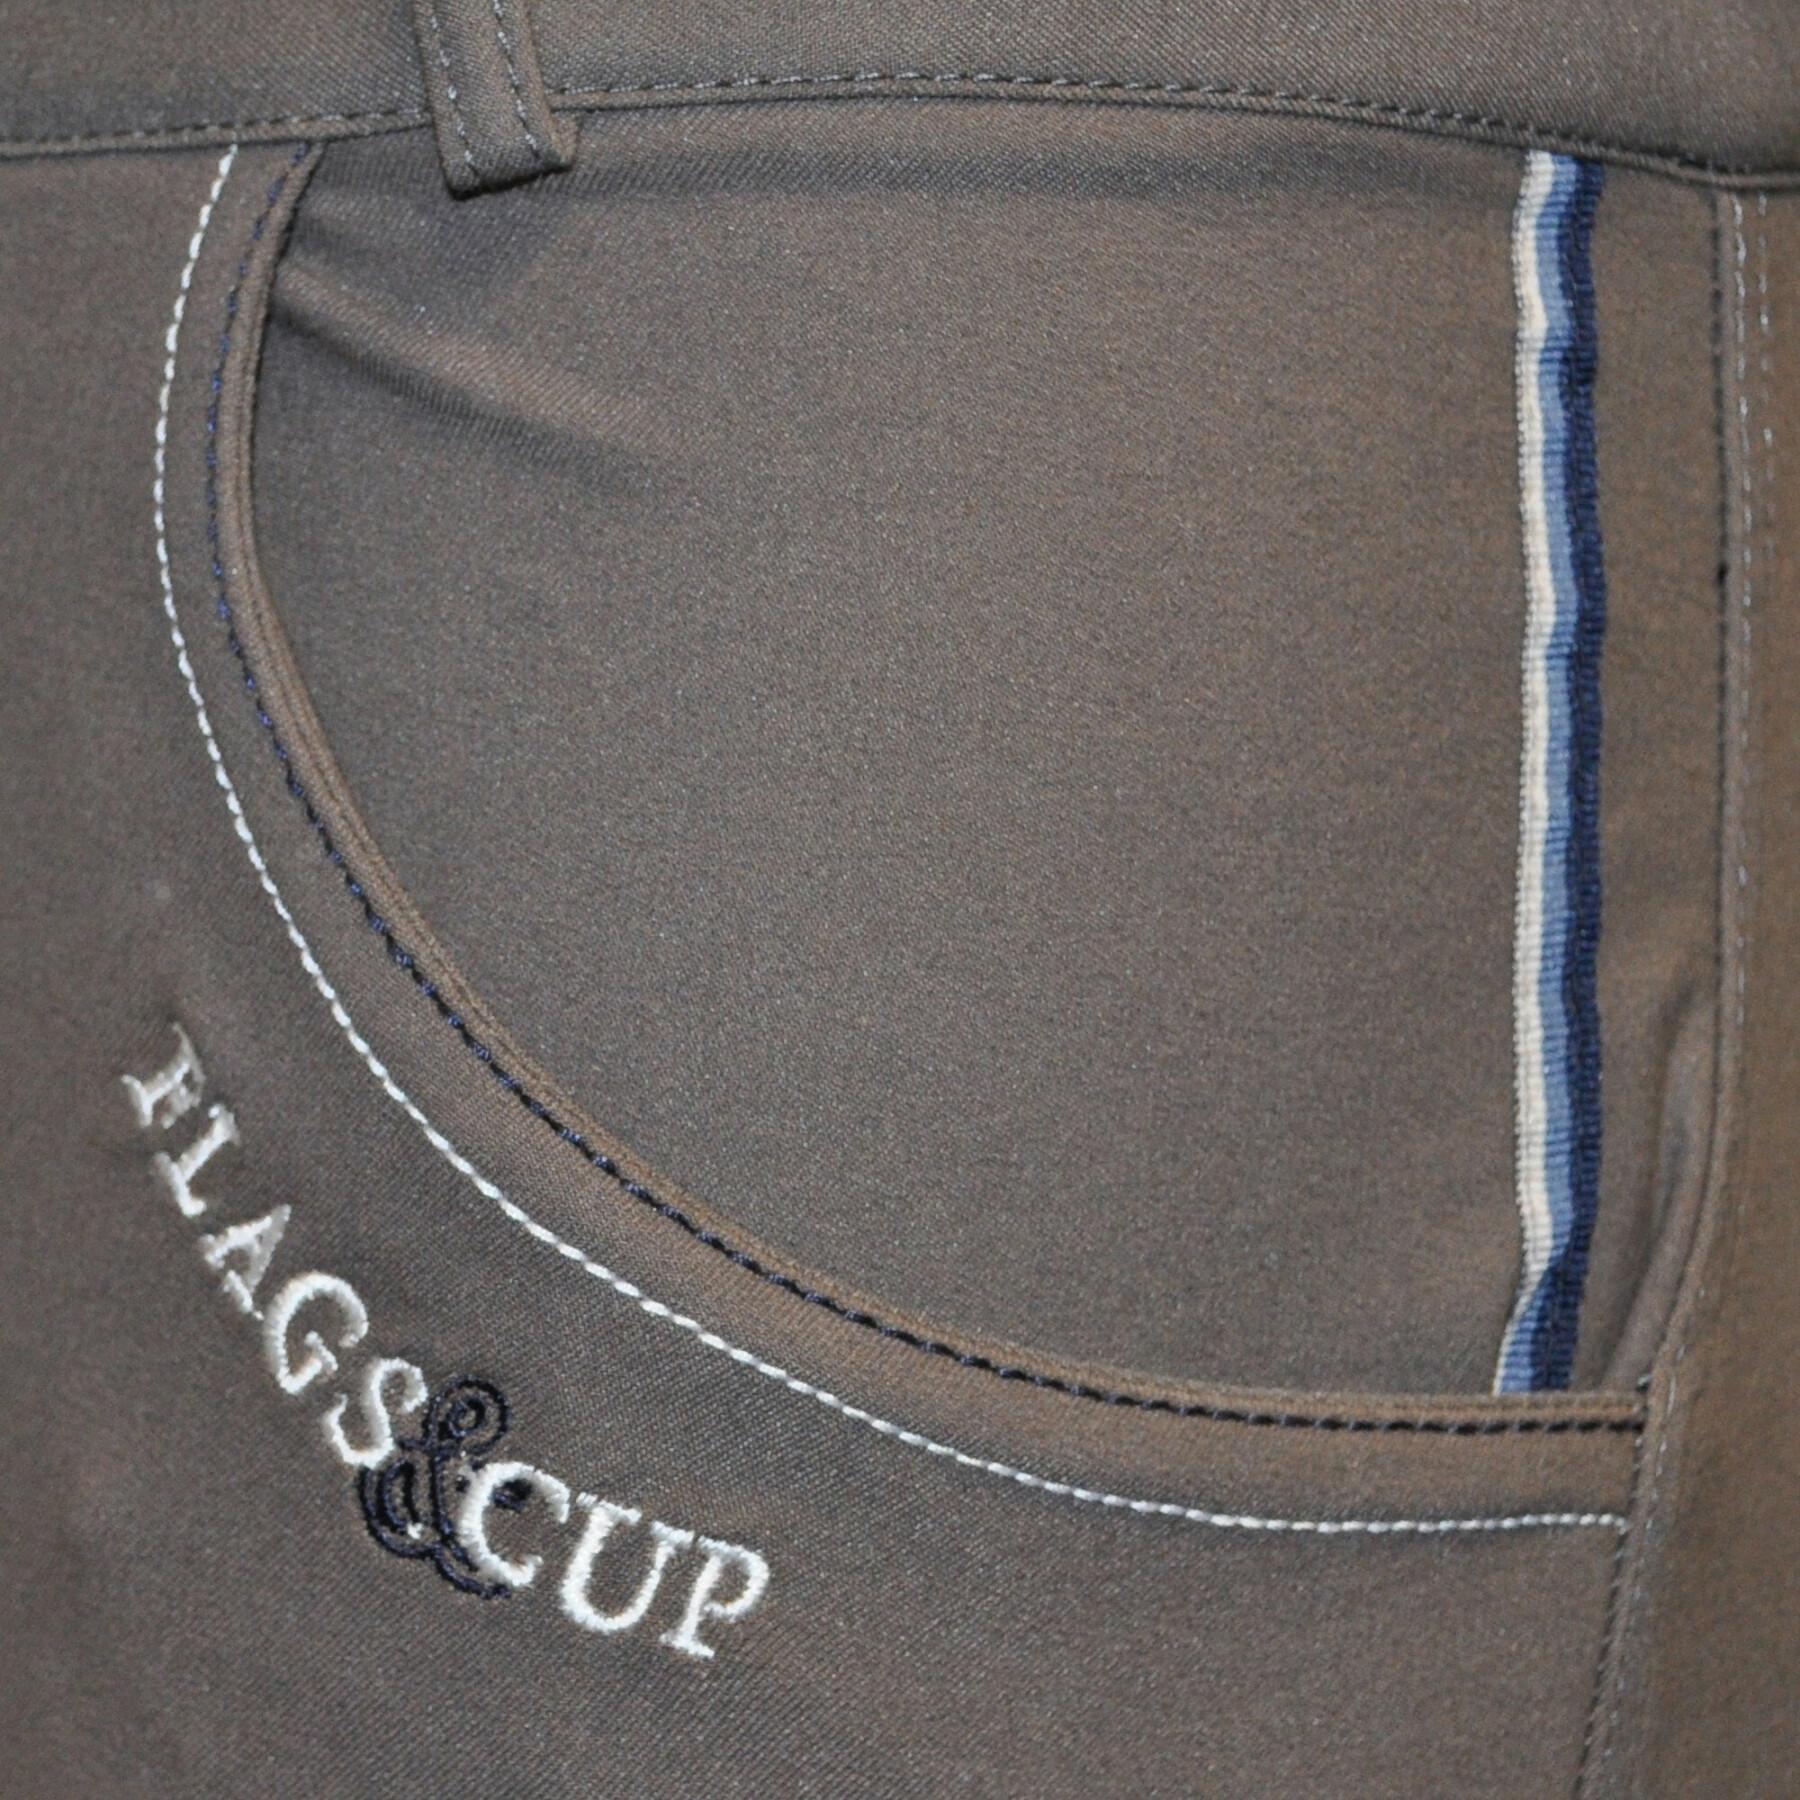 Pantalon équitation Flags&Cup Preto